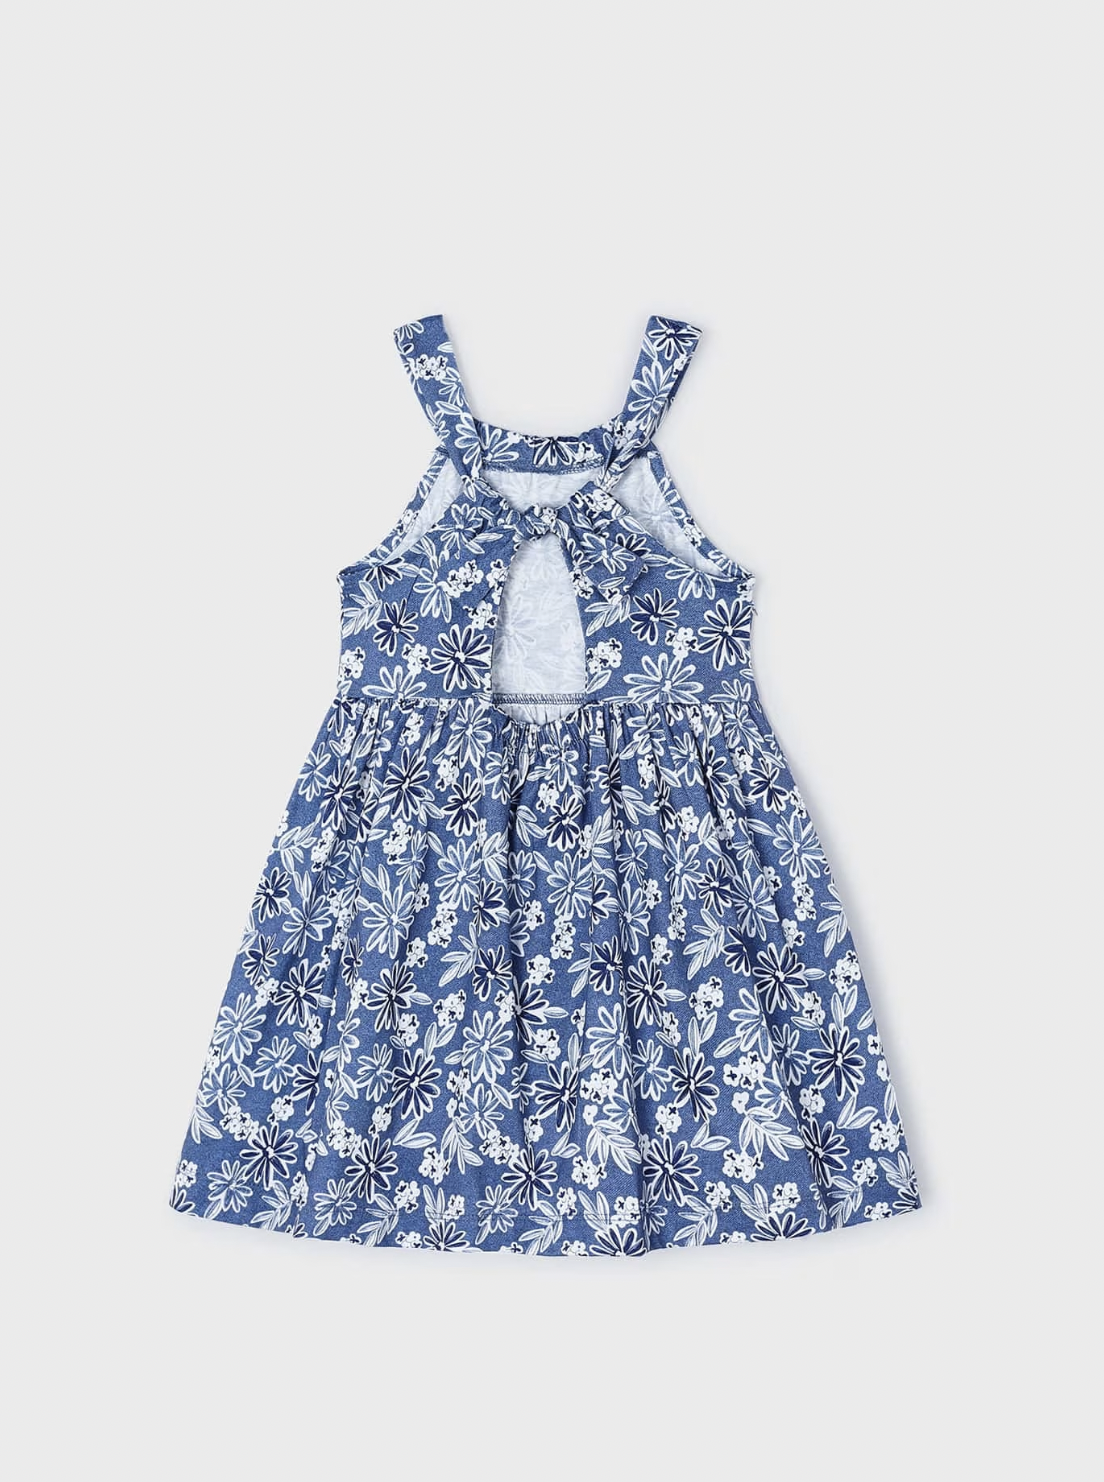 Blue & White Floral Print Dress